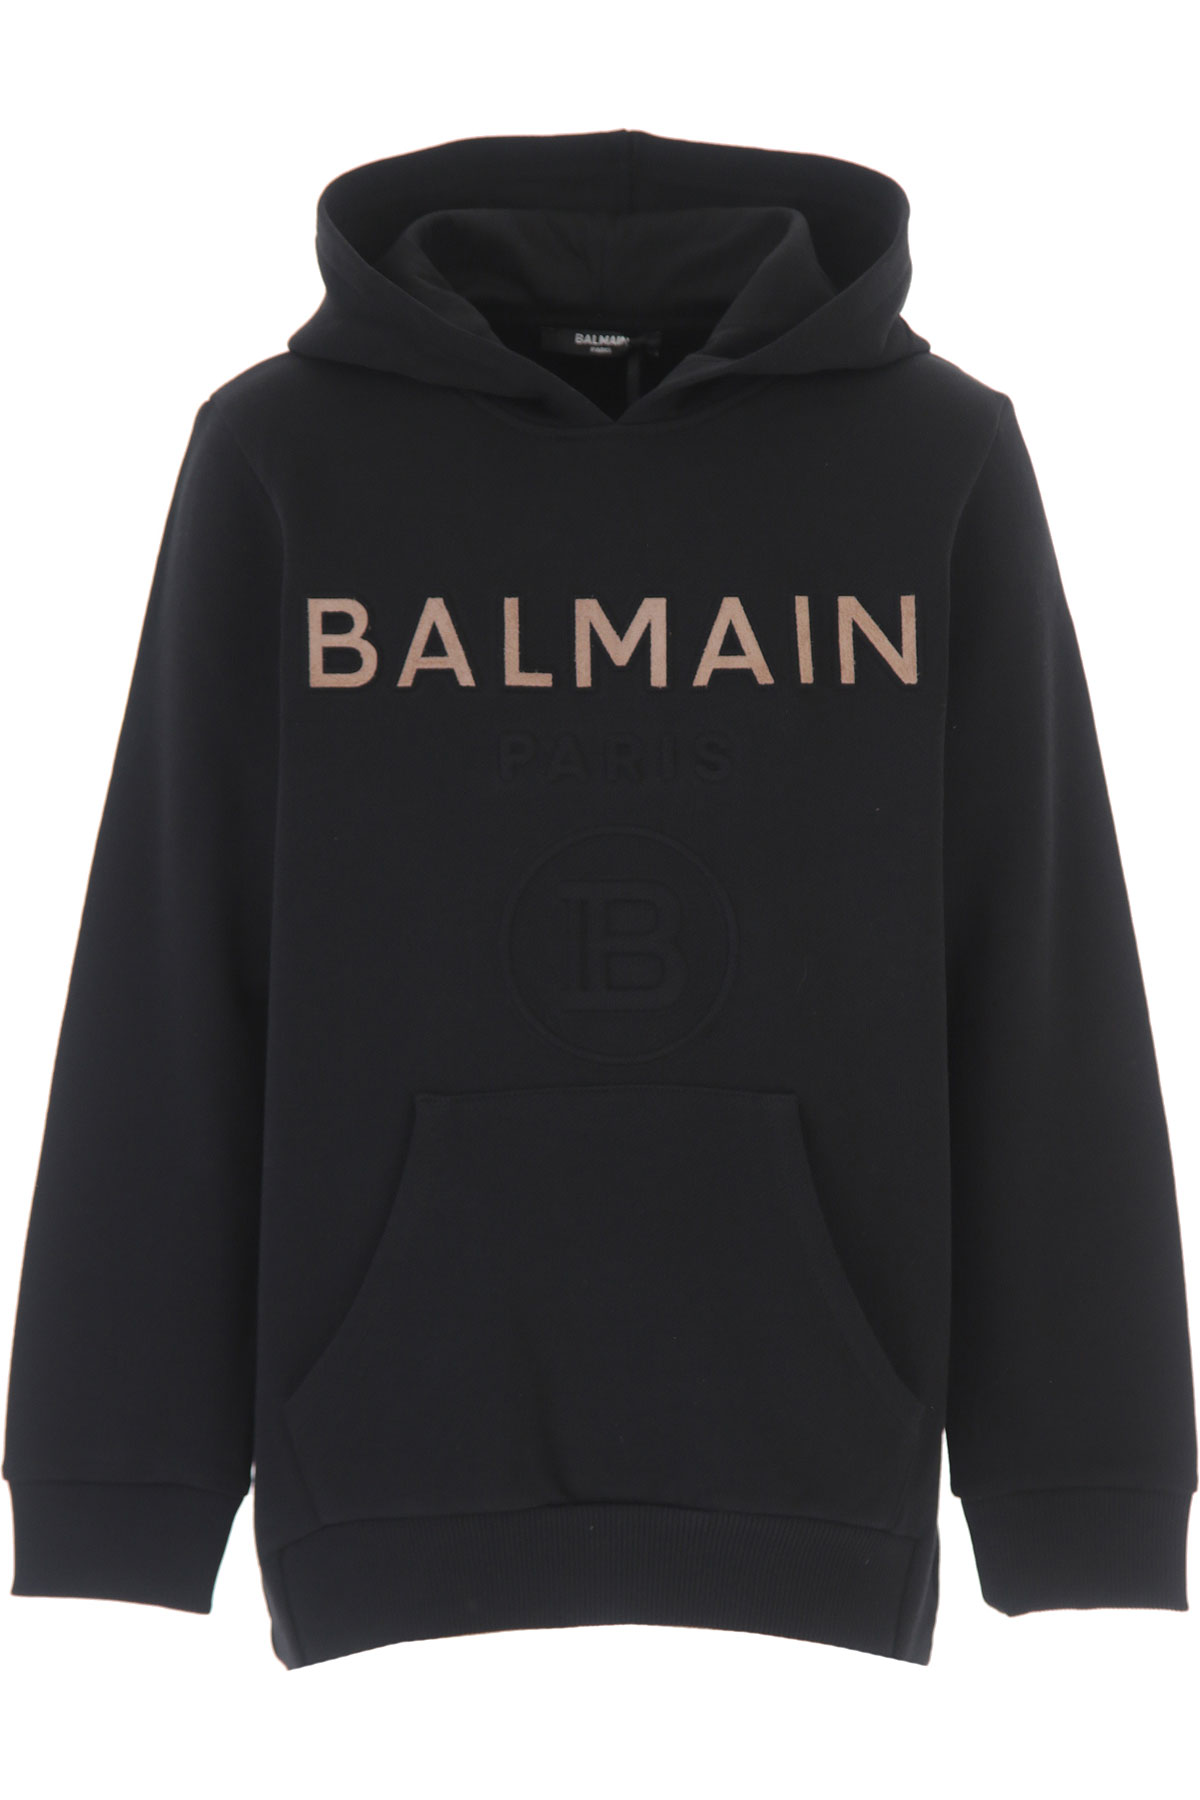 Kidswear Balmain, Style code: 6O4590-OX370-930